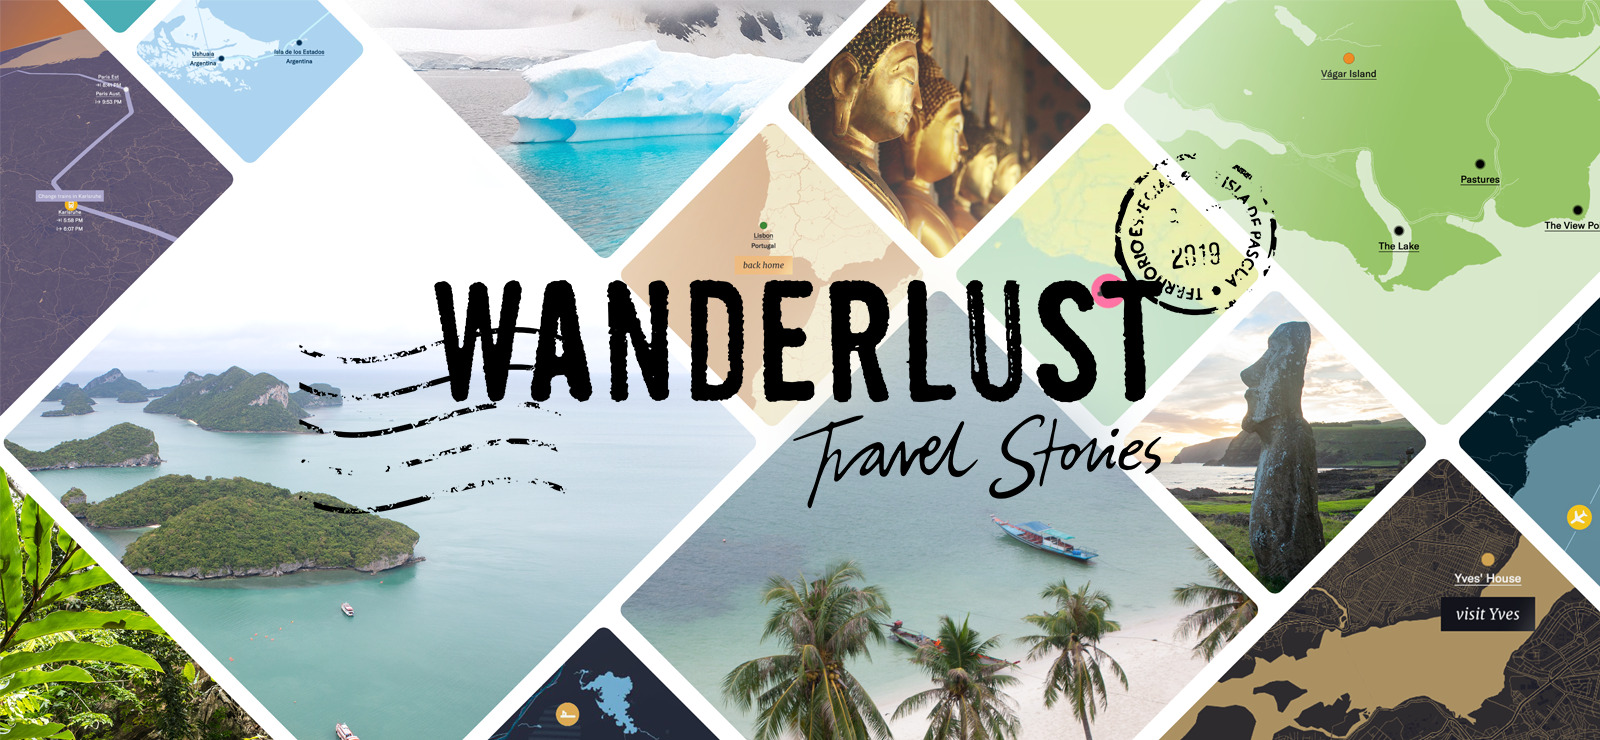 wanderlust travel blogger died